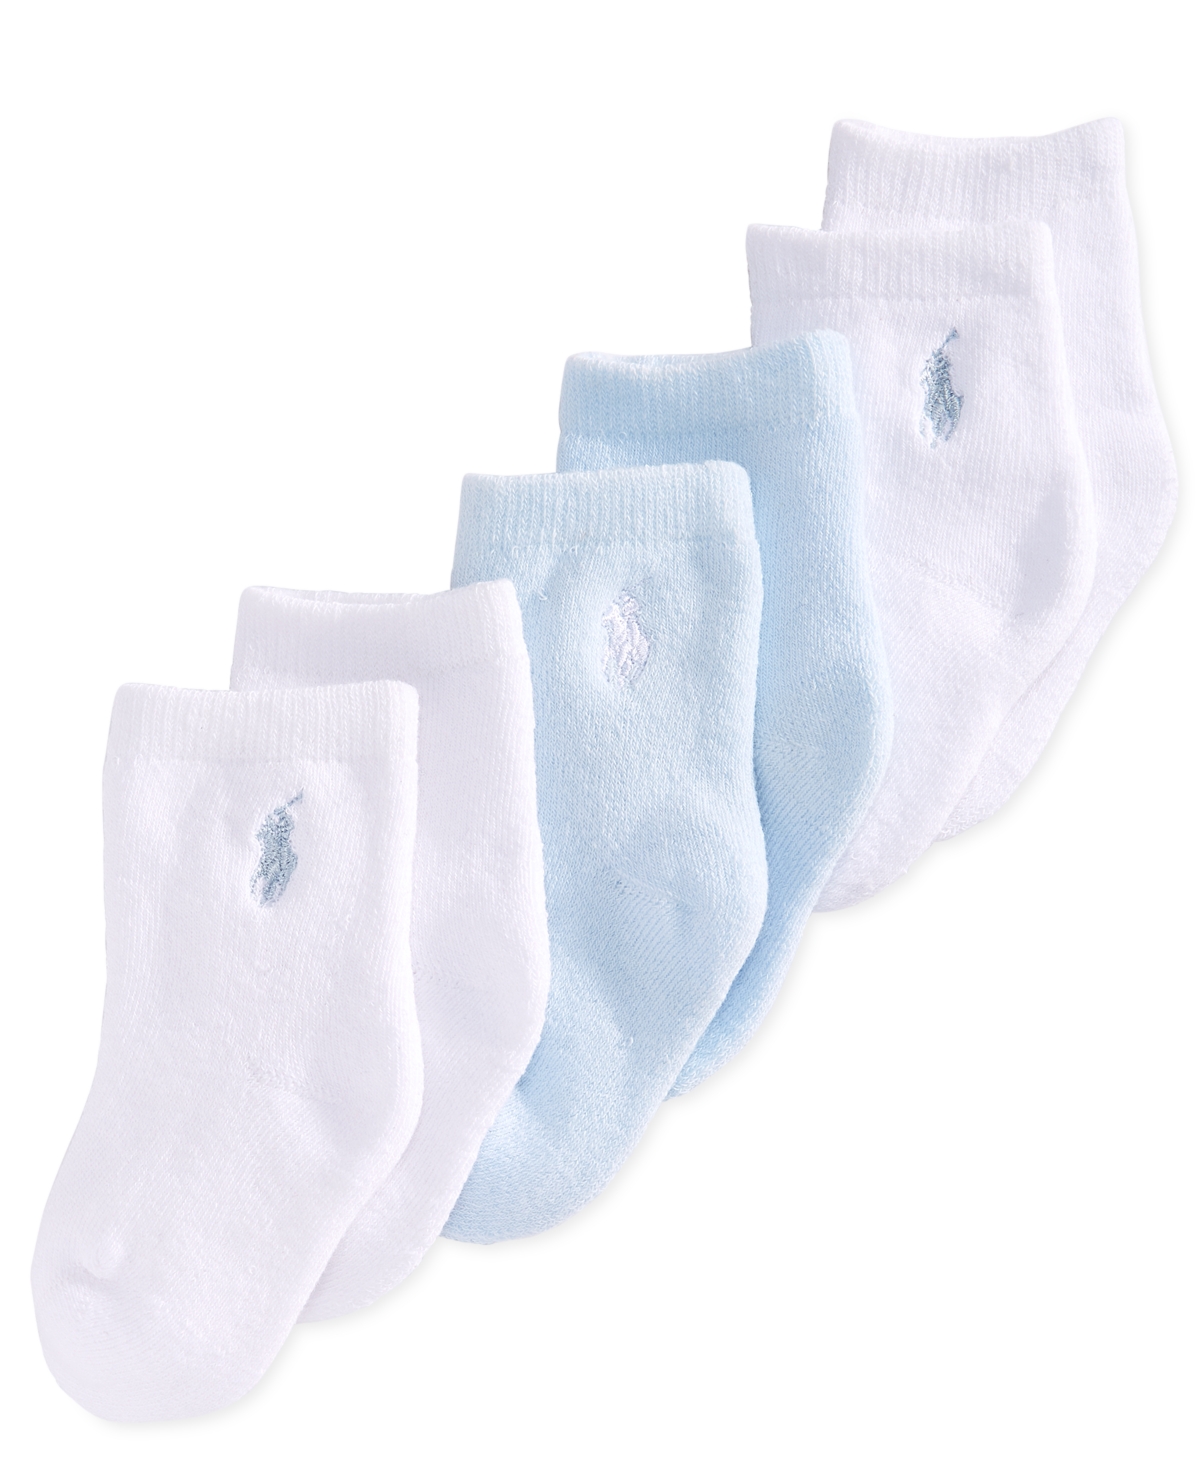 Polo Ralph Lauren Ralph Lauren Baby Boys Full Terry Crew Socks, Pack Of 3 In Blue,white